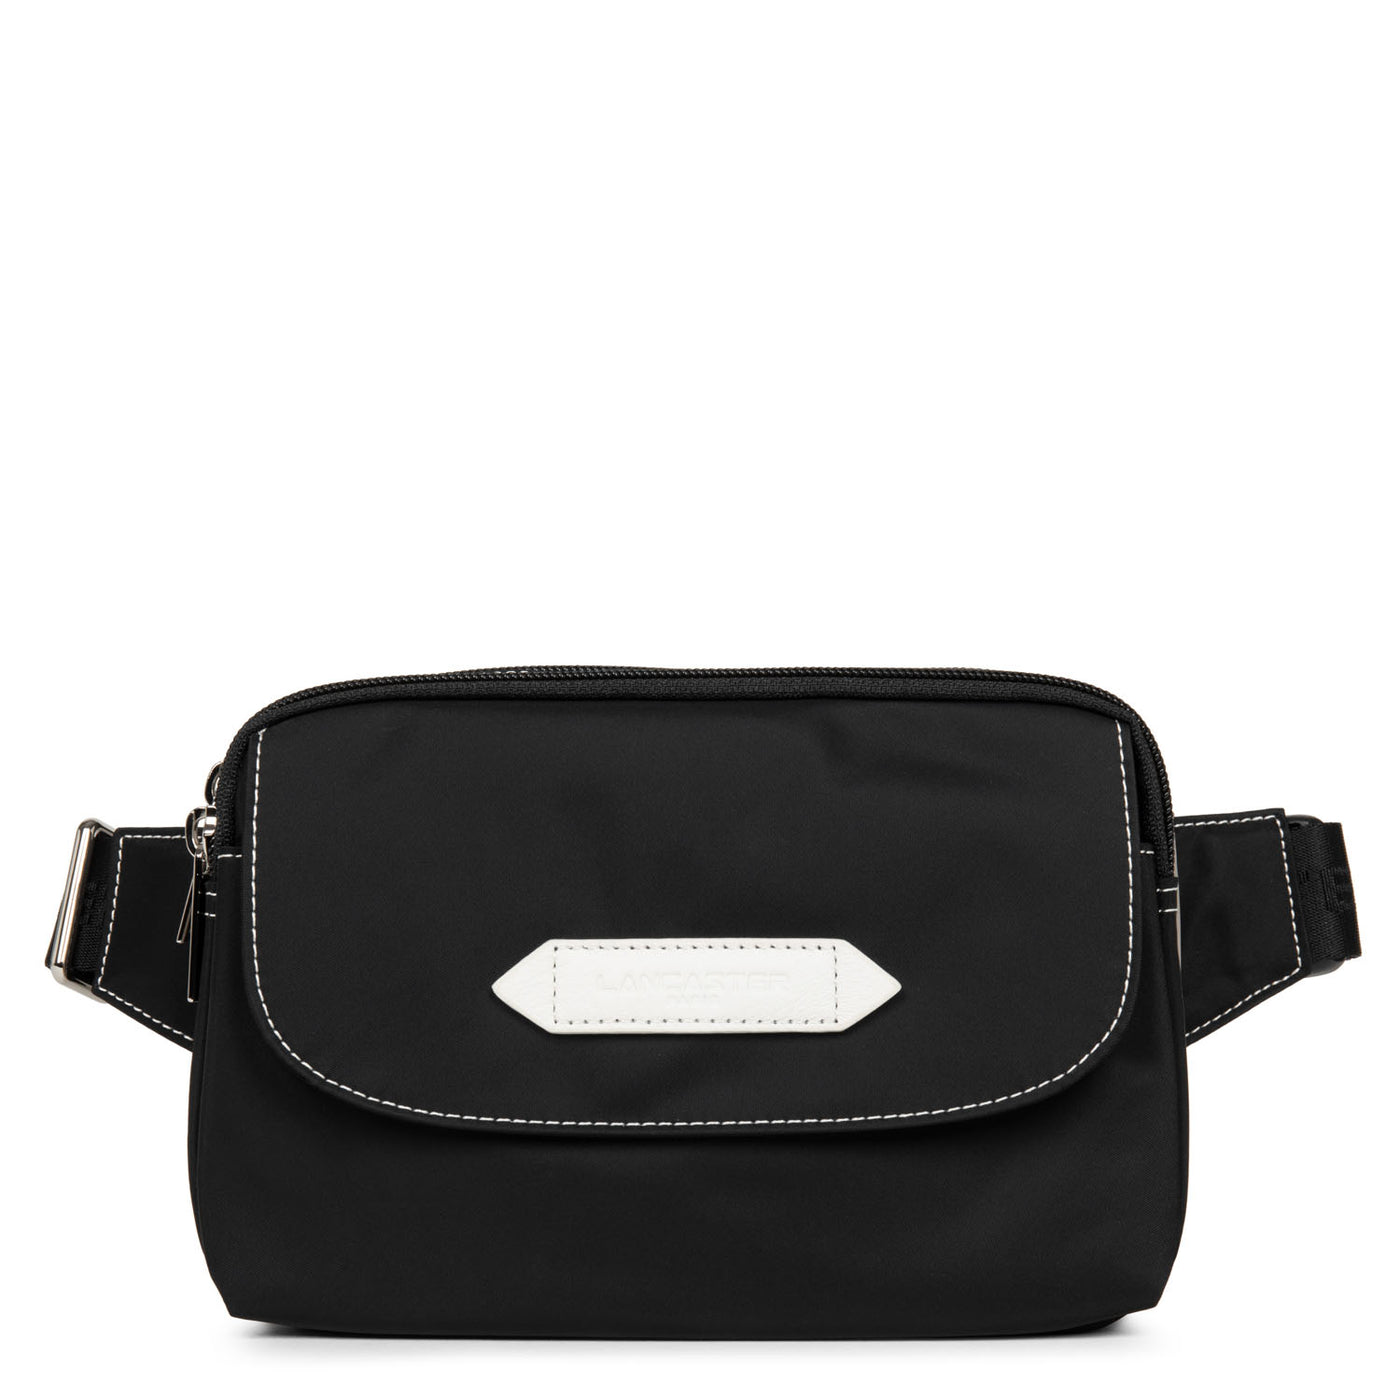 sac porté ceinture - basic sport #couleur_noir-galet